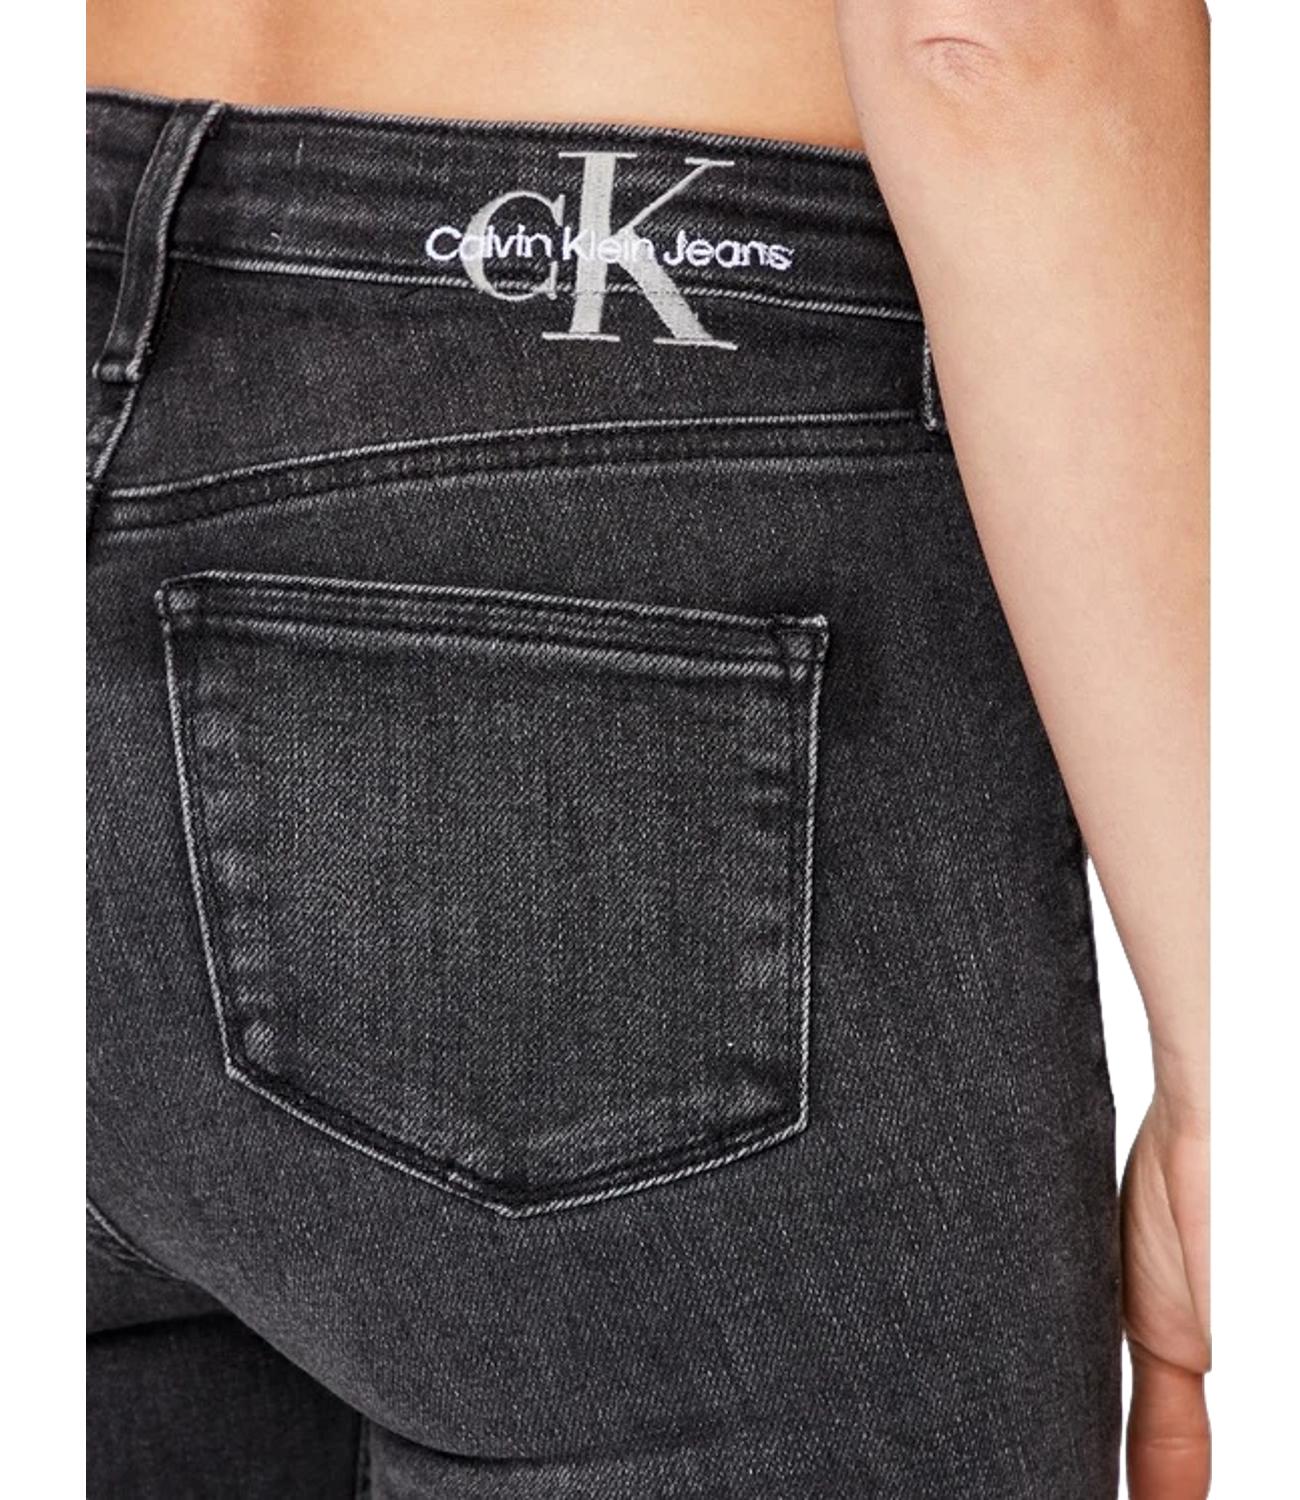 Skinny fit black denim jeans with black ck logo on the back